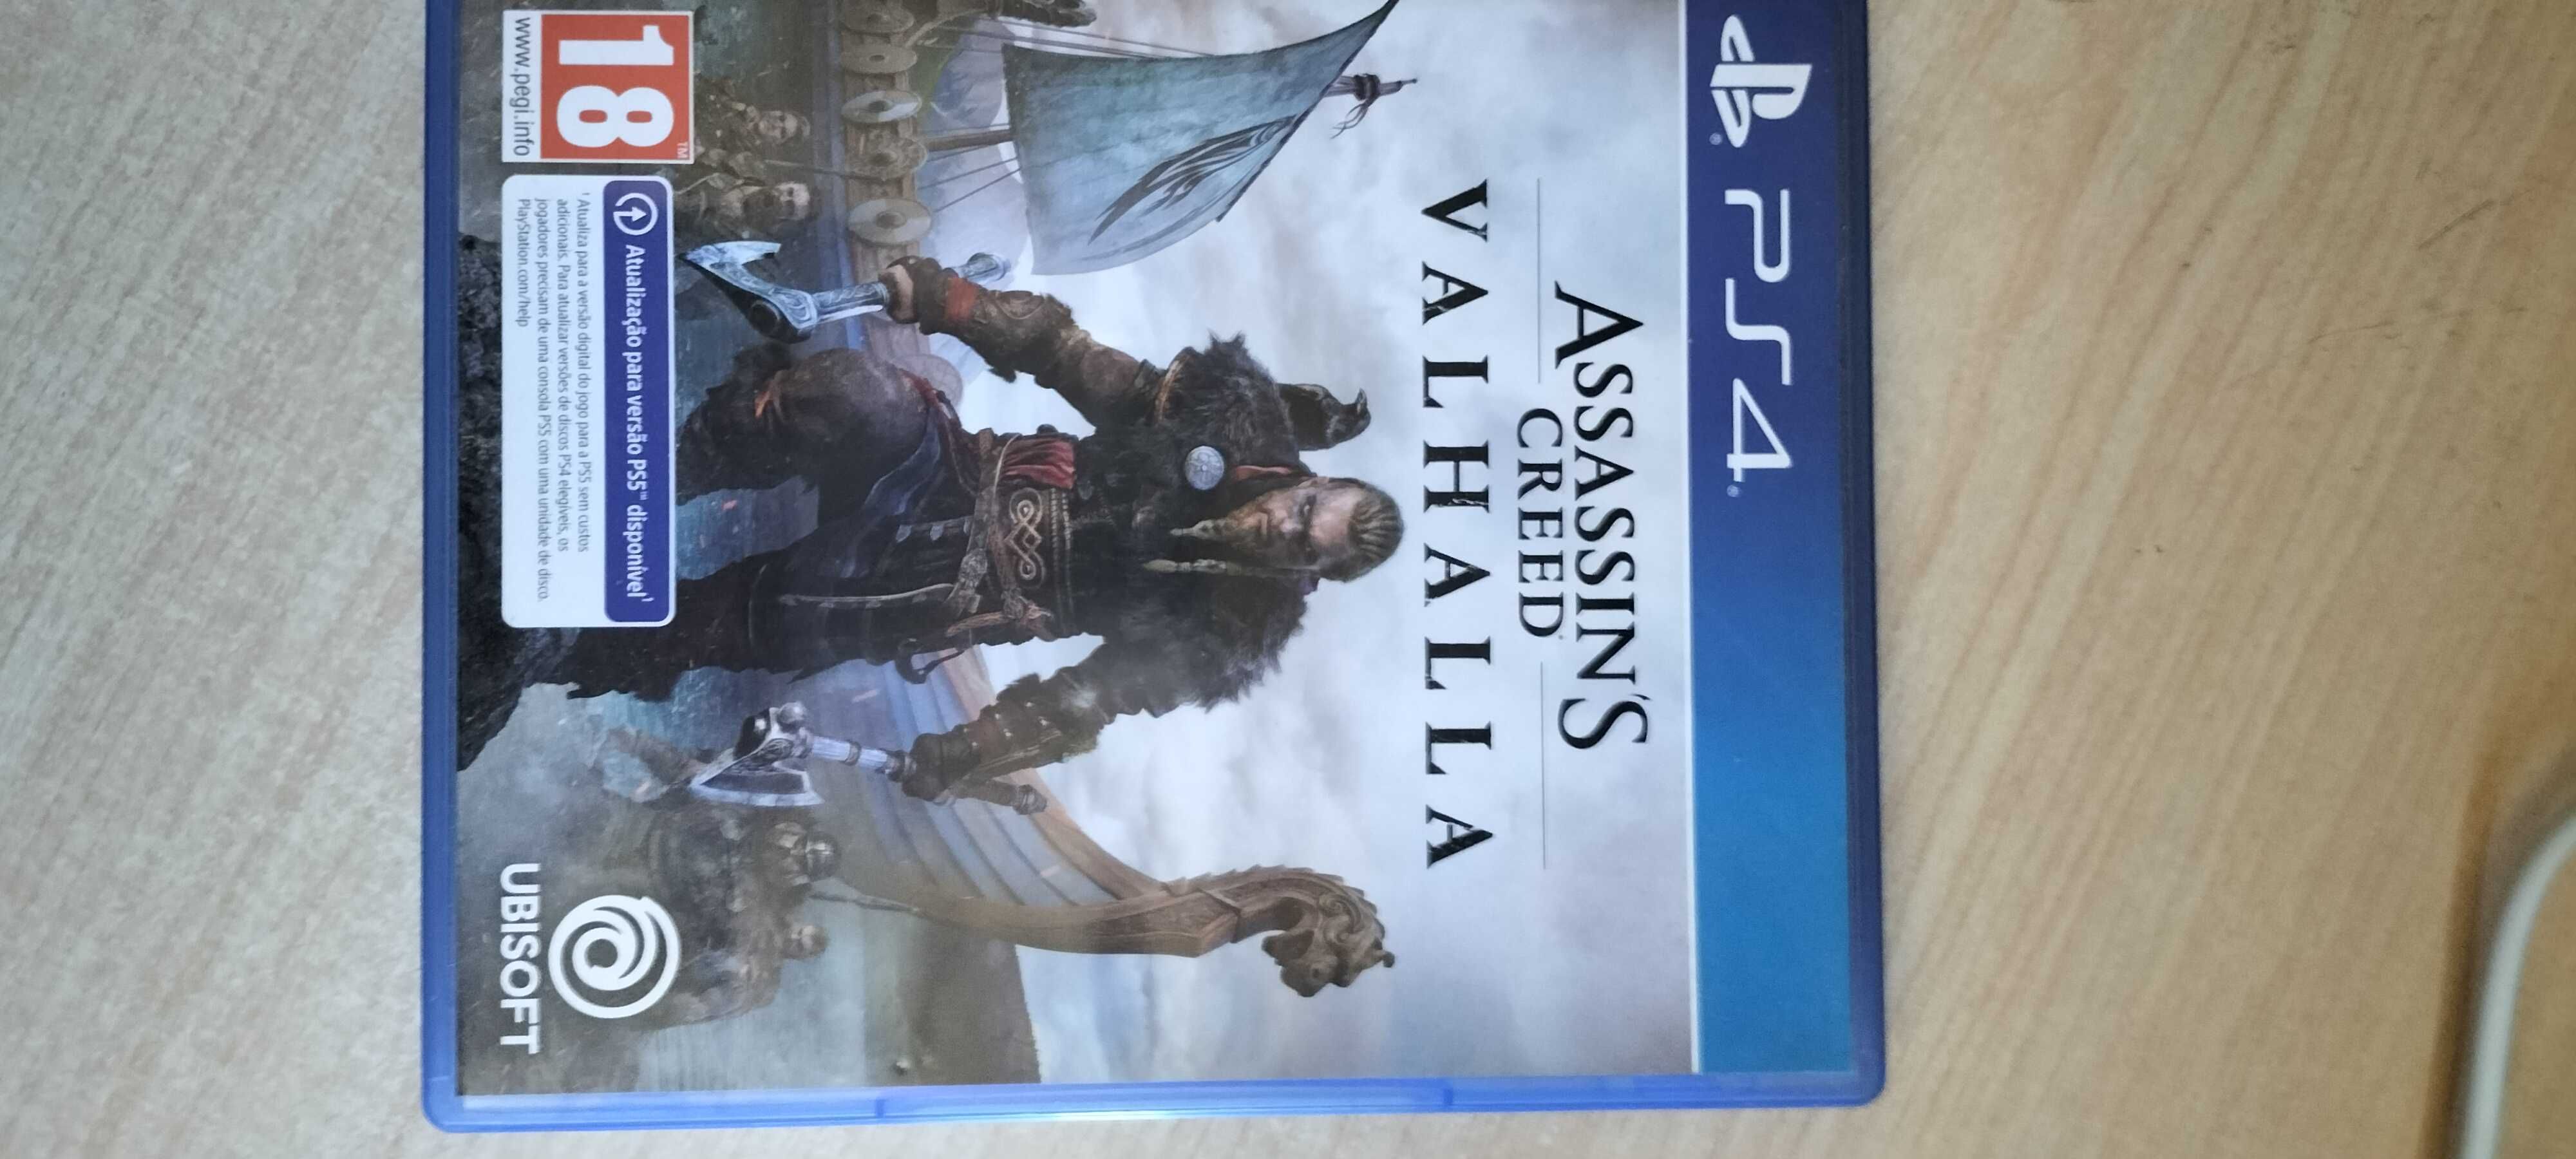 Jogo ps4 Assassin's Creed valhalla